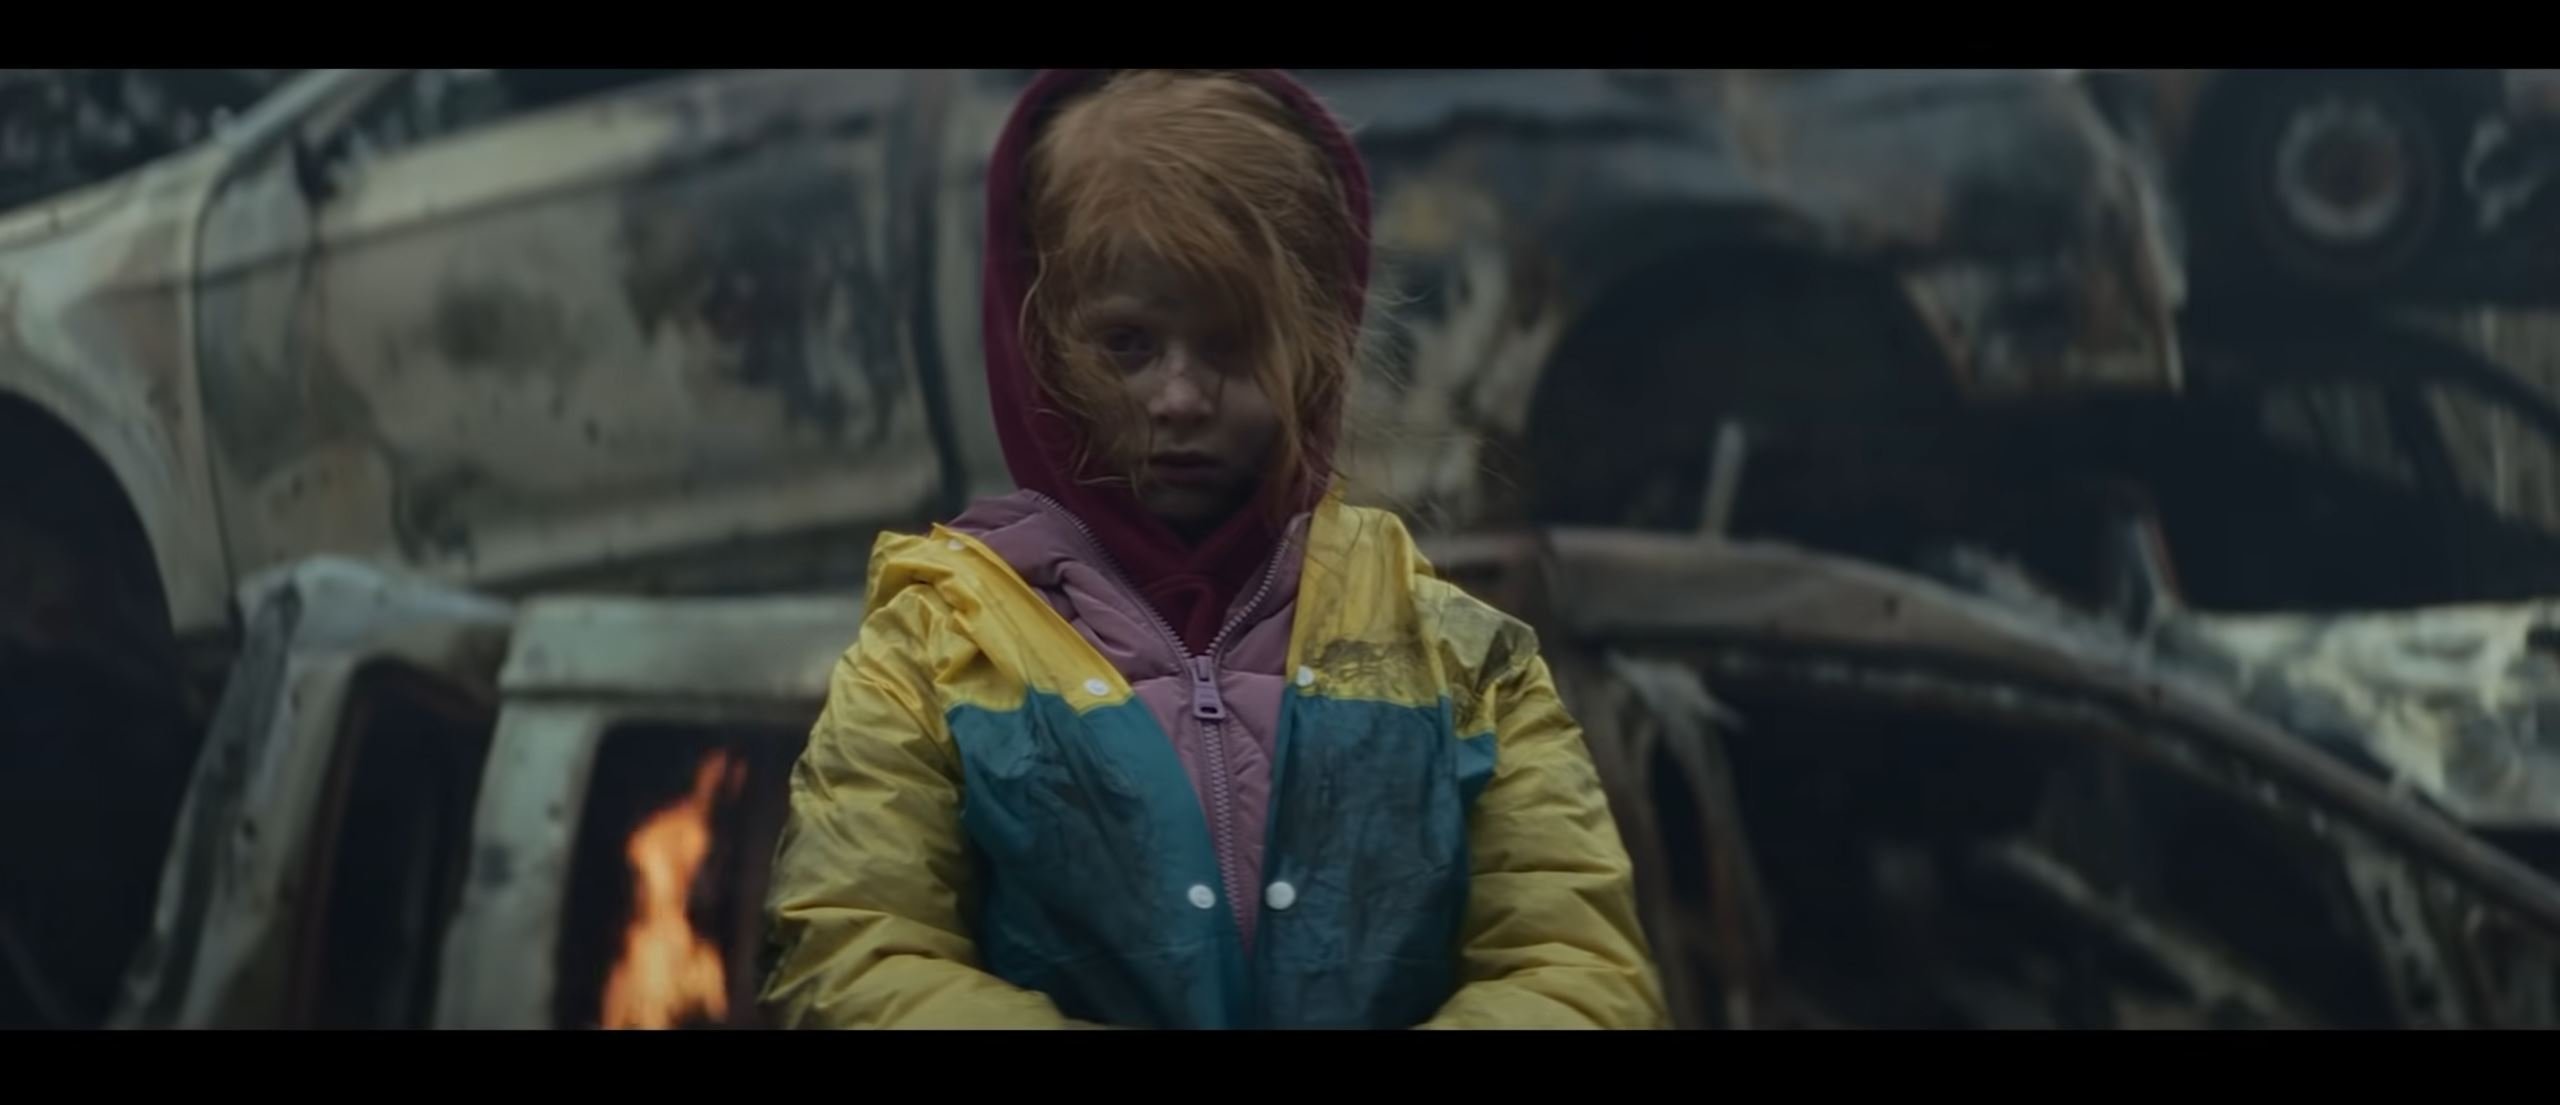 El impactante videoclip del ganador de Eurovisión: la destrucción de la guerra de Ucrania